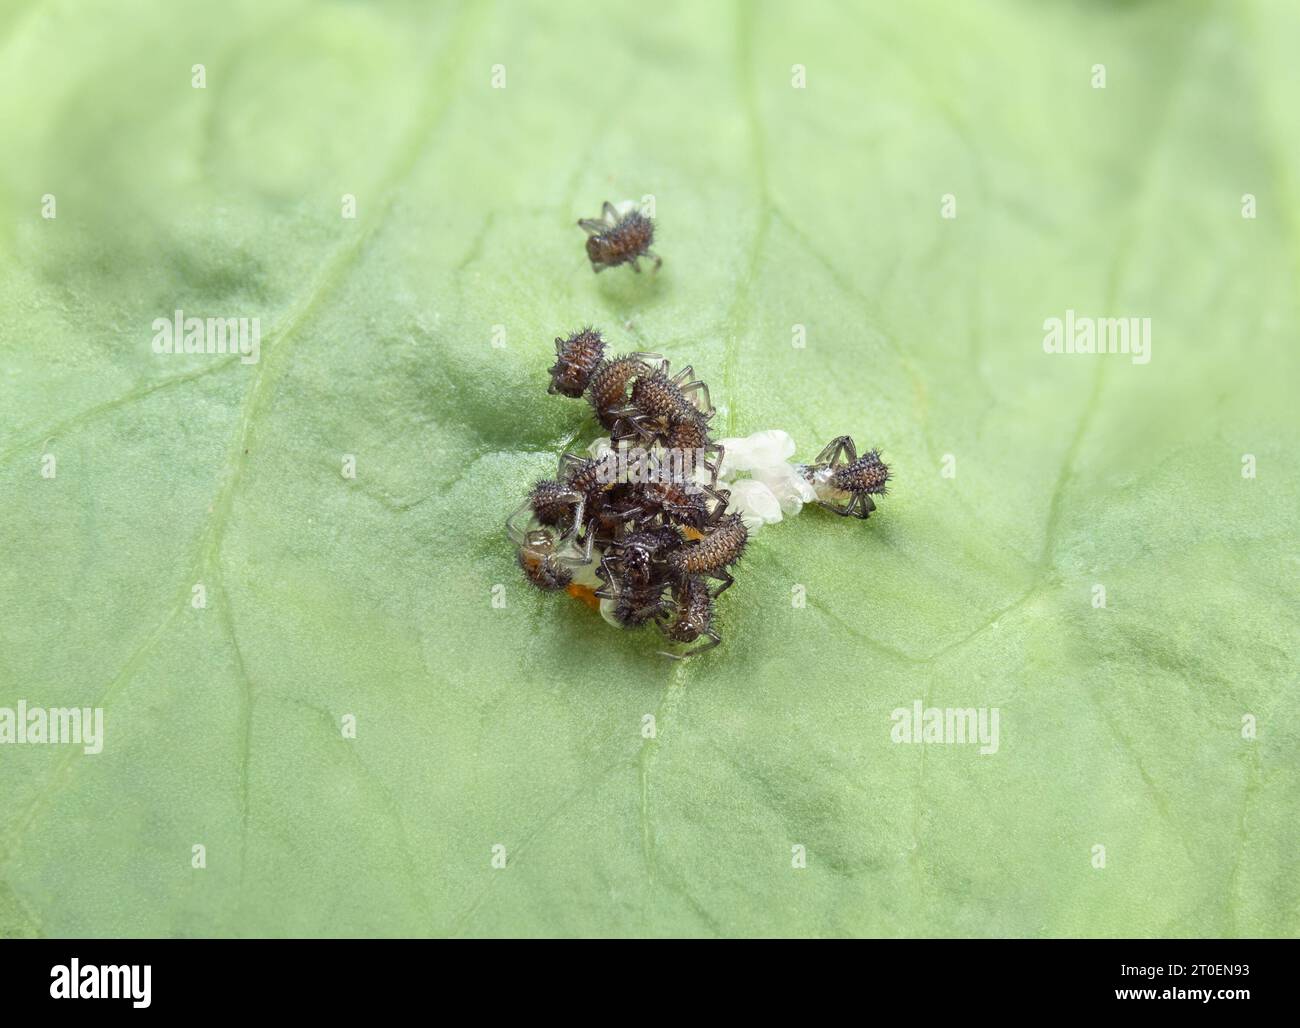 Marienkäfer schlüpfen aus einer Gruppe von Eiern auf Blatt. Gruppe winziger schwarzer Larven, die auftauchen. Bekannt als Marienkäfer, Damenuhr und Damenfliege. Beneficia Stockfoto